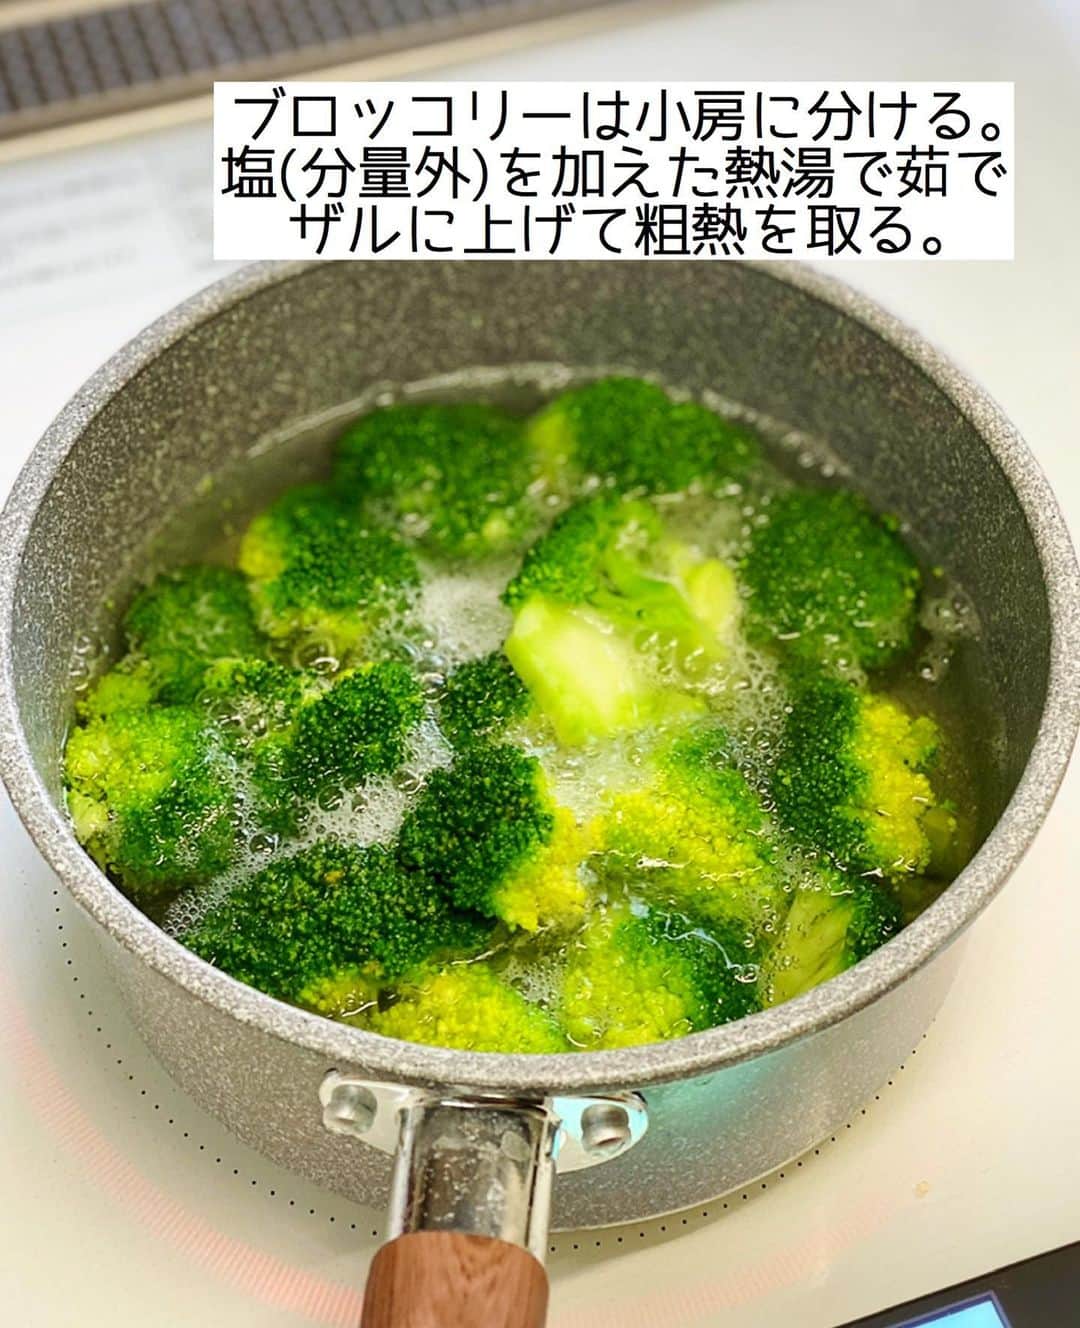 Mizuki【料理ブロガー・簡単レシピ】さんのインスタグラム写真 - (Mizuki【料理ブロガー・簡単レシピ】Instagram)「・﻿ 【#レシピ 】ーーーーーーーーーーー﻿ ブロッコリーとゆで卵の和風サラダ﻿ ーーーーーーーーーーーーーーーーー﻿ ﻿ 　﻿ ﻿ おはようございます(*^^*)﻿ ﻿ 今日ご紹介させていただくのは﻿ 簡単副菜レシピ♡﻿ \ ブロッコリーとゆで卵の和風サラダ /﻿ ﻿ ごまマヨ醤油×おかかで﻿ 風味よく仕上げました(*´艸`)﻿ 栄養たっぷりで食べ応えもあり﻿ しっかりおかずになりますよ〜♩﻿ ﻿ とっても簡単にできるので﻿ よかったらお試し下さいね(*^^*)﻿ ﻿ ﻿ ﻿ ＿＿＿＿＿＿＿＿＿＿＿＿＿＿＿＿＿＿＿＿﻿ 【2〜3人分】﻿ ブロッコリー...1房﻿ ゆで卵...2個﻿ ●かつお節...小1袋﻿ ●マヨネーズ...大3﻿ ●白すりごま...大1﻿ ●醤油・砂糖...各小1﻿ ﻿ 1.ブロッコリーは小房に分ける。塩(分量外)を加えた熱湯で茹で、ザルに上げて粗熱を取る。﻿ 2.ボウルに●を入れて混ぜ、ざっくり割ったゆで卵と1を加えて和える。﻿ ￣￣￣￣￣￣￣￣￣￣￣￣￣￣￣￣￣￣￣￣﻿ ﻿ ﻿ ﻿ 《ポイント》﻿ ♦︎ブロッコリーは水に晒さず、ザルに上げて粗熱を取ると水っぽくなりません♩﻿ ♦︎お好みで仕上げにかつお節を追加でかけても美味しいです♩﻿ ﻿ ﻿ ﻿ ﻿ ﻿ ﻿ ＿＿＿＿＿＿＿＿＿＿＿＿＿＿＿＿＿＿﻿ 🎁器プレゼントキャンペーン実施中🎁﻿ ￣￣￣￣￣￣￣￣￣￣￣￣￣￣￣￣￣￣﻿ おかげざで［今どき和食］が10刷増版となりました✨﻿ そこで心ばかりですが感謝の気持ちをお伝えしたく﻿ 《器プレゼントキャンペーンを実施中です♩》﻿ ▼ ▼ ▼﻿ ＿＿＿＿＿＿＿＿＿﻿ 【プレゼント内容】﻿ ￣￣￣￣￣￣￣￣￣﻿ 今人気の波佐見焼 大皿1枚﻿ もしくは小皿2枚セットを15名様に﻿ ＿＿＿＿＿＿＿＿＿﻿ 【応募方法】﻿ ￣￣￣￣￣￣￣￣￣﻿ ❶［Mizukiの今どき和食］から﻿ 1品ご自身で作った料理画像、﻿ もしくはカバー(表紙)画像を準備。﻿ ❷［#Mizukiの今どき和食器プレゼント ］﻿ のタグを付けて投稿！﻿ (以上で応募完了です😊　2/14〆切)﻿ _________________________________﻿ ﻿ 　﻿ ﻿ ﻿ ﻿ ﻿ ⭐️発売中⭐️﻿ ＿＿＿＿＿＿＿＿＿＿＿＿＿＿＿＿＿＿﻿ ホケミレシピの決定版♩﻿ \はじめてでも失敗しない/﻿ 📙#ホットケーキミックスのお菓子 📙﻿ ﻿ NHKまる得マガジンテキスト☆﻿ ホットケーキミックスで﻿ 📗絶品おやつ&意外なランチ📗﻿ ﻿ しんどくない献立、考えました♩﻿ \15分でいただきます/﻿ 📕#Mizukiの2品献立 📕﻿ ﻿ 和食をもっとカジュアルに♩﻿ \毎日のごはんがラクになる/﻿ 📘Mizukiの今どき和食 📘﻿ ﻿ 重版しました！﻿ ありがとうございます😭﻿ 📗ラクしておいしい！#1品晩ごはん 📗﻿ ﻿ 摂食障害から料理研究家になるまでを綴った﻿ はじめてのエッセイ本﻿ 📙普通のおいしいをつくるひと 📙﻿ ￣￣￣￣￣￣￣￣￣￣￣￣￣￣￣￣￣￣￣﻿ ﻿ ﻿ ﻿ ﻿ ﻿ ＿＿＿＿＿＿＿＿＿＿＿＿＿＿＿＿＿＿﻿ レシピを作って下さった際や﻿ レシピ本についてのご投稿には﻿ タグ付け( @mizuki_31cafe )して﻿ お知らせいただけると嬉しいです😊💕﻿ ￣￣￣￣￣￣￣￣￣￣￣￣￣￣￣￣￣￣﻿ ﻿ ﻿ ﻿ ﻿ ﻿ #副菜#サラダ#ブロッコリー#ゆで卵#おかずサラダ#Mizuki#簡単レシピ#時短レシピ#節約レシピ#料理#フーディーテーブル#マカロニメイト#おうちごはん#デリスタグラマー#料理好きな人と繋がりたい#おうちごはんlover#写真好きな人と繋がりたい#foodpic#cooking#recipe#lin_stagrammer#foodporn#yummy#f52grams#ブロッコリーとゆで卵の和風サラダm」2月13日 8時14分 - mizuki_31cafe